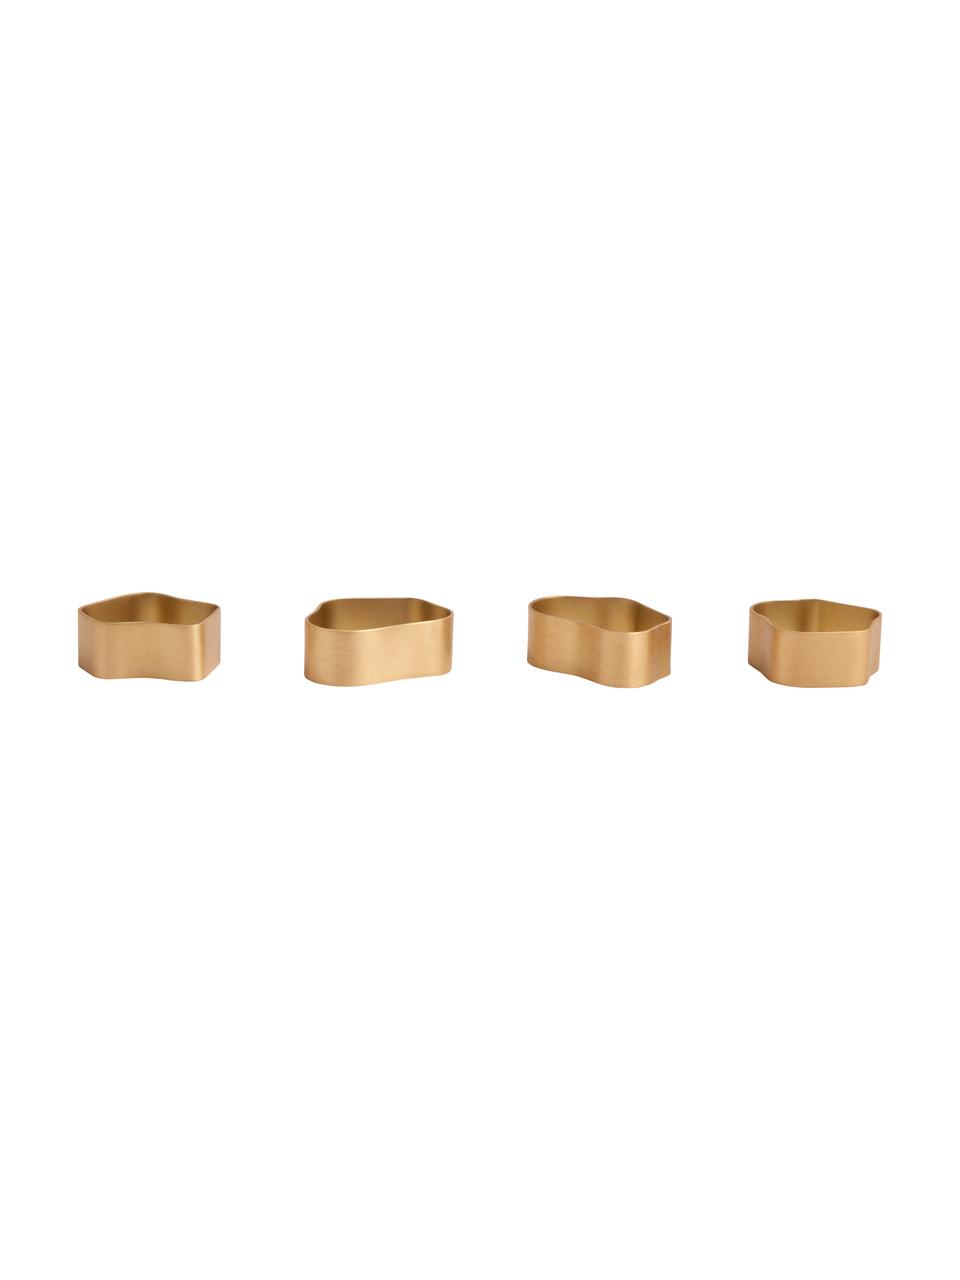 Servilleteros de latón Capri, 4 uds., Latón cepillado, Dorado, Set de diferentes tamaños